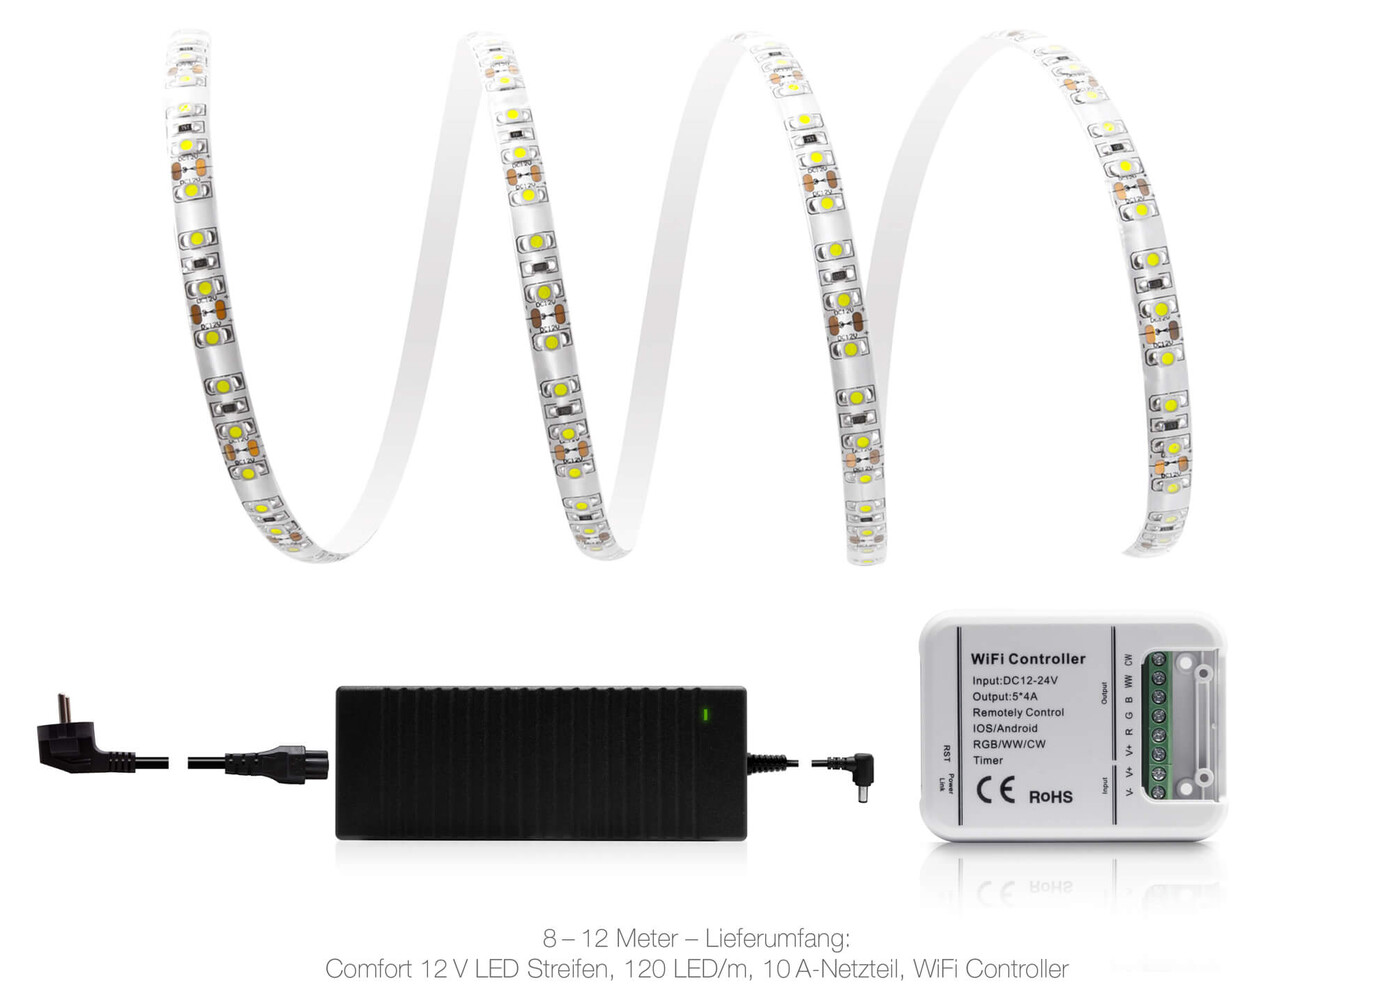 Hochwertiger LED Streifen von LED Universum, in Kaltweiß und IP65-zertifiziert